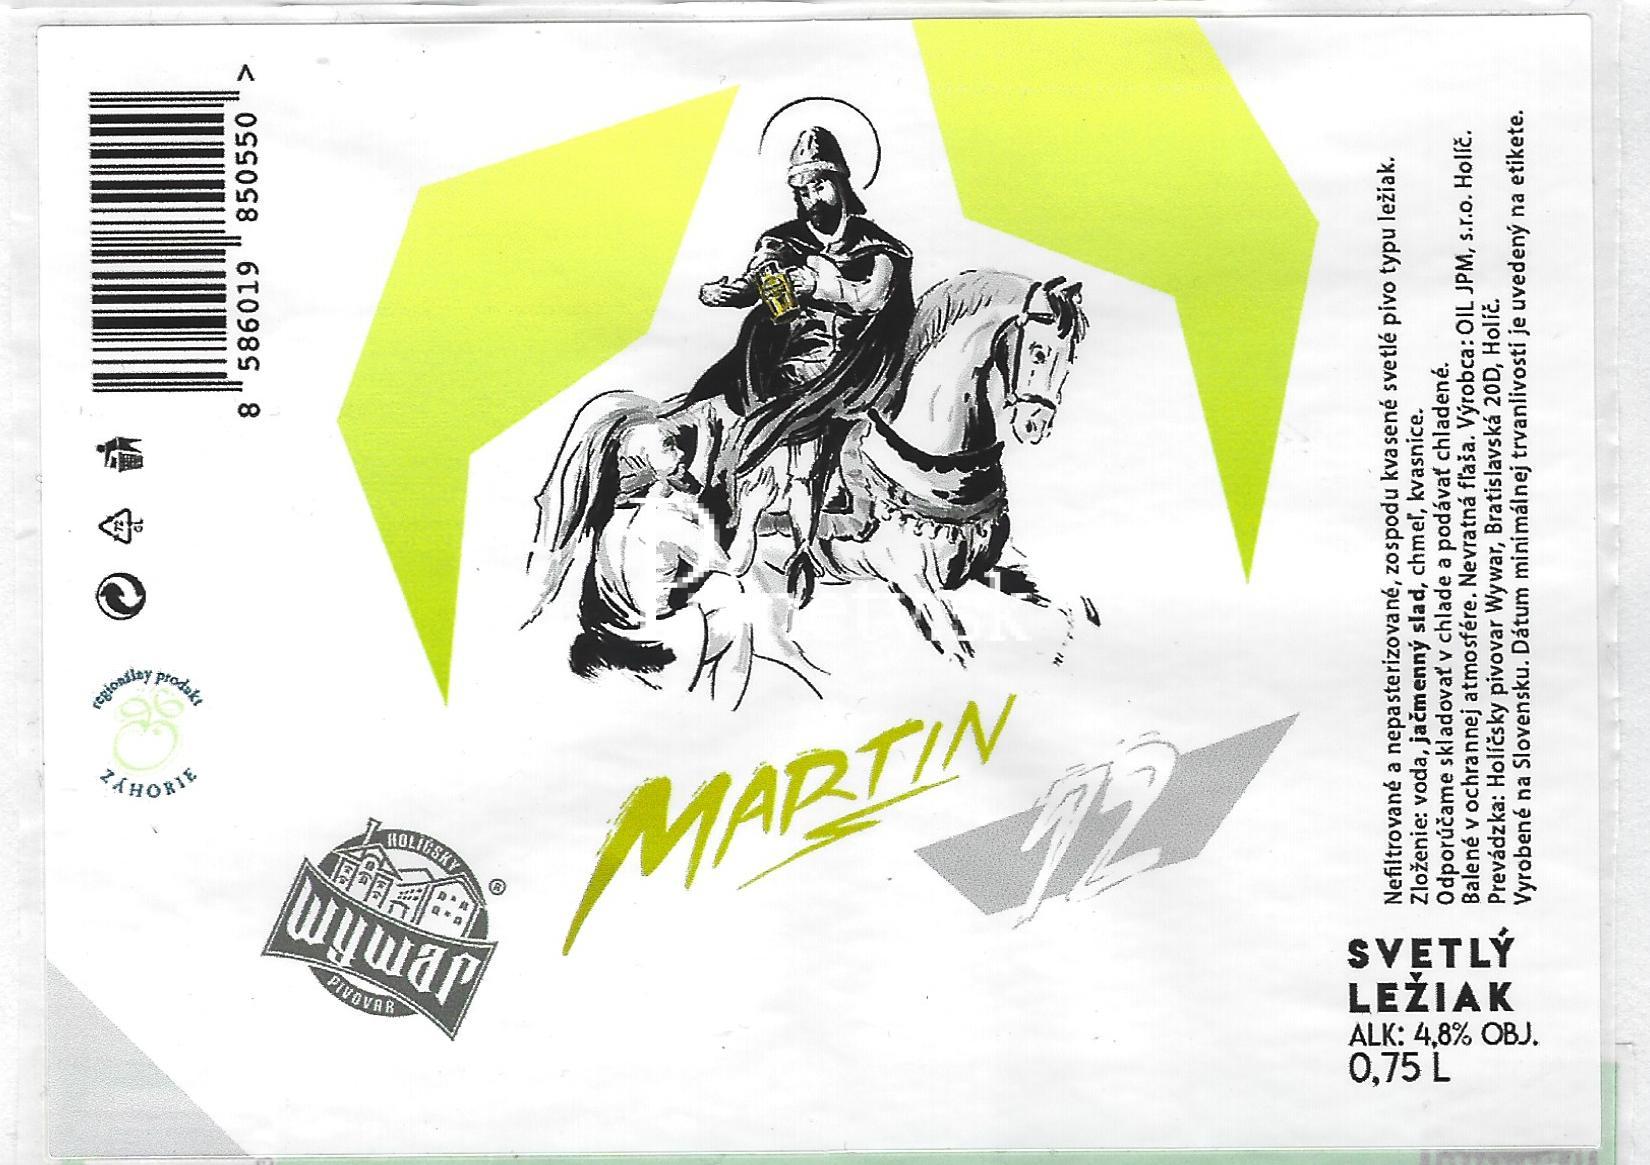 Wywar - Martin 12°